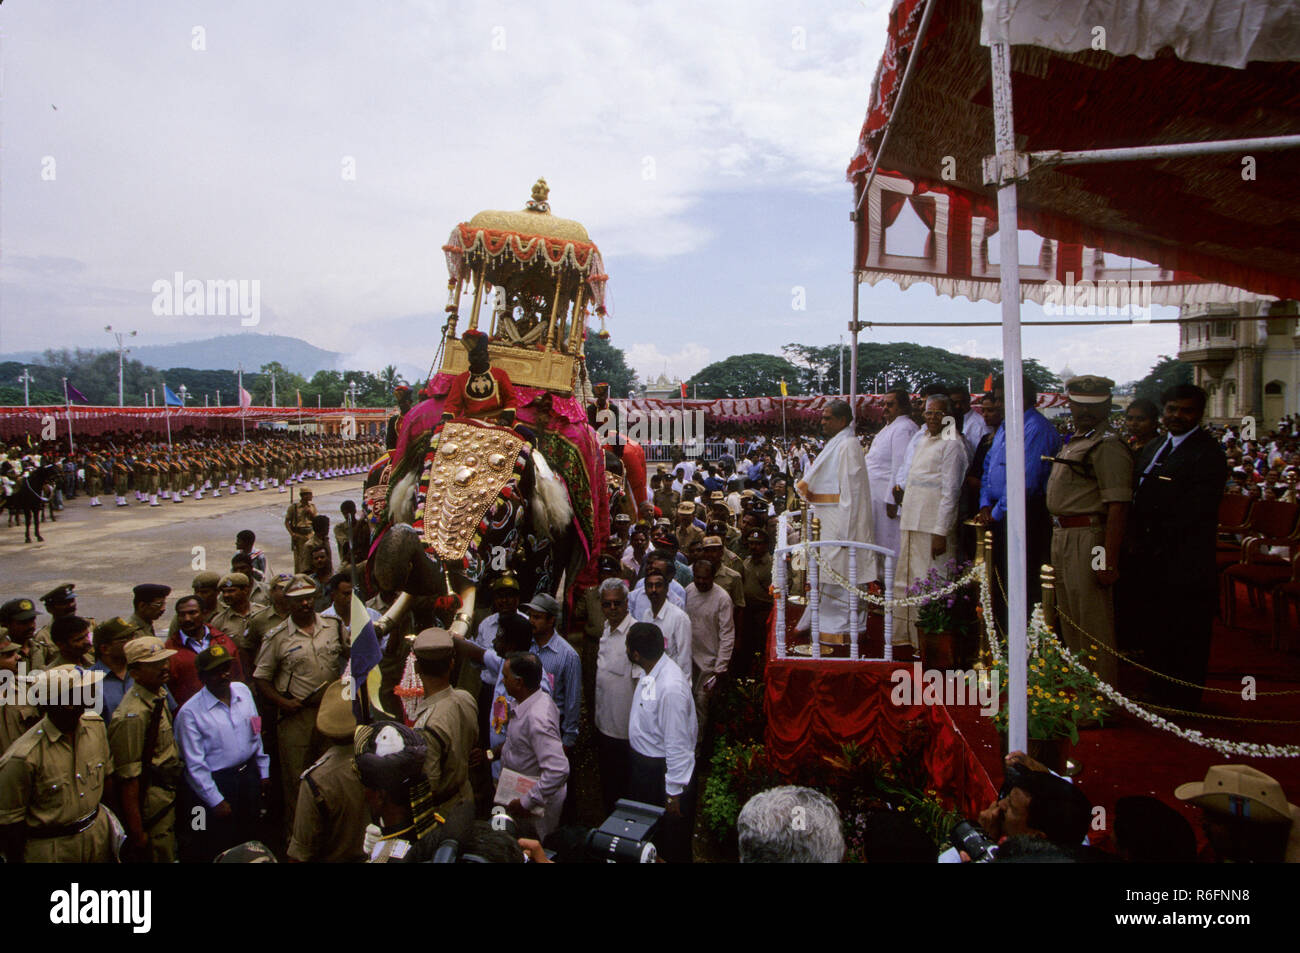 Elephant march festival on Dussera dusera occasion, mysore, karnataka, india Stock Photo